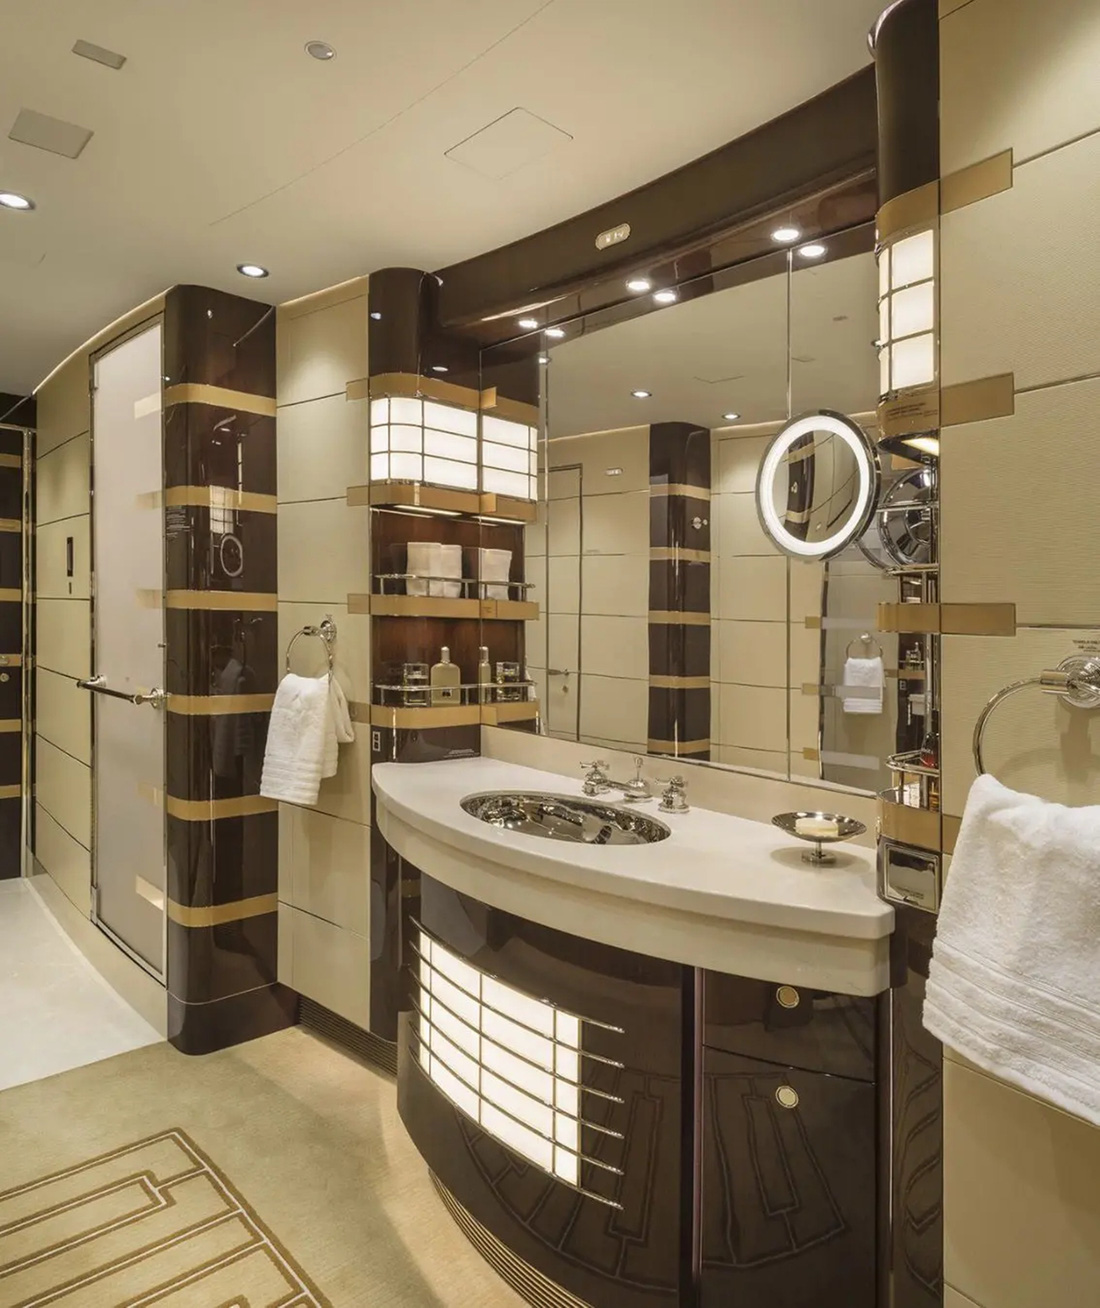 Phòng tắm chính có khu vực tắm đứng với vòi hoa sen, cũng như bàn trang điểm hoàn chỉnh với gương và bồn rửa - Ảnh: Cabinet Alberto Pinto